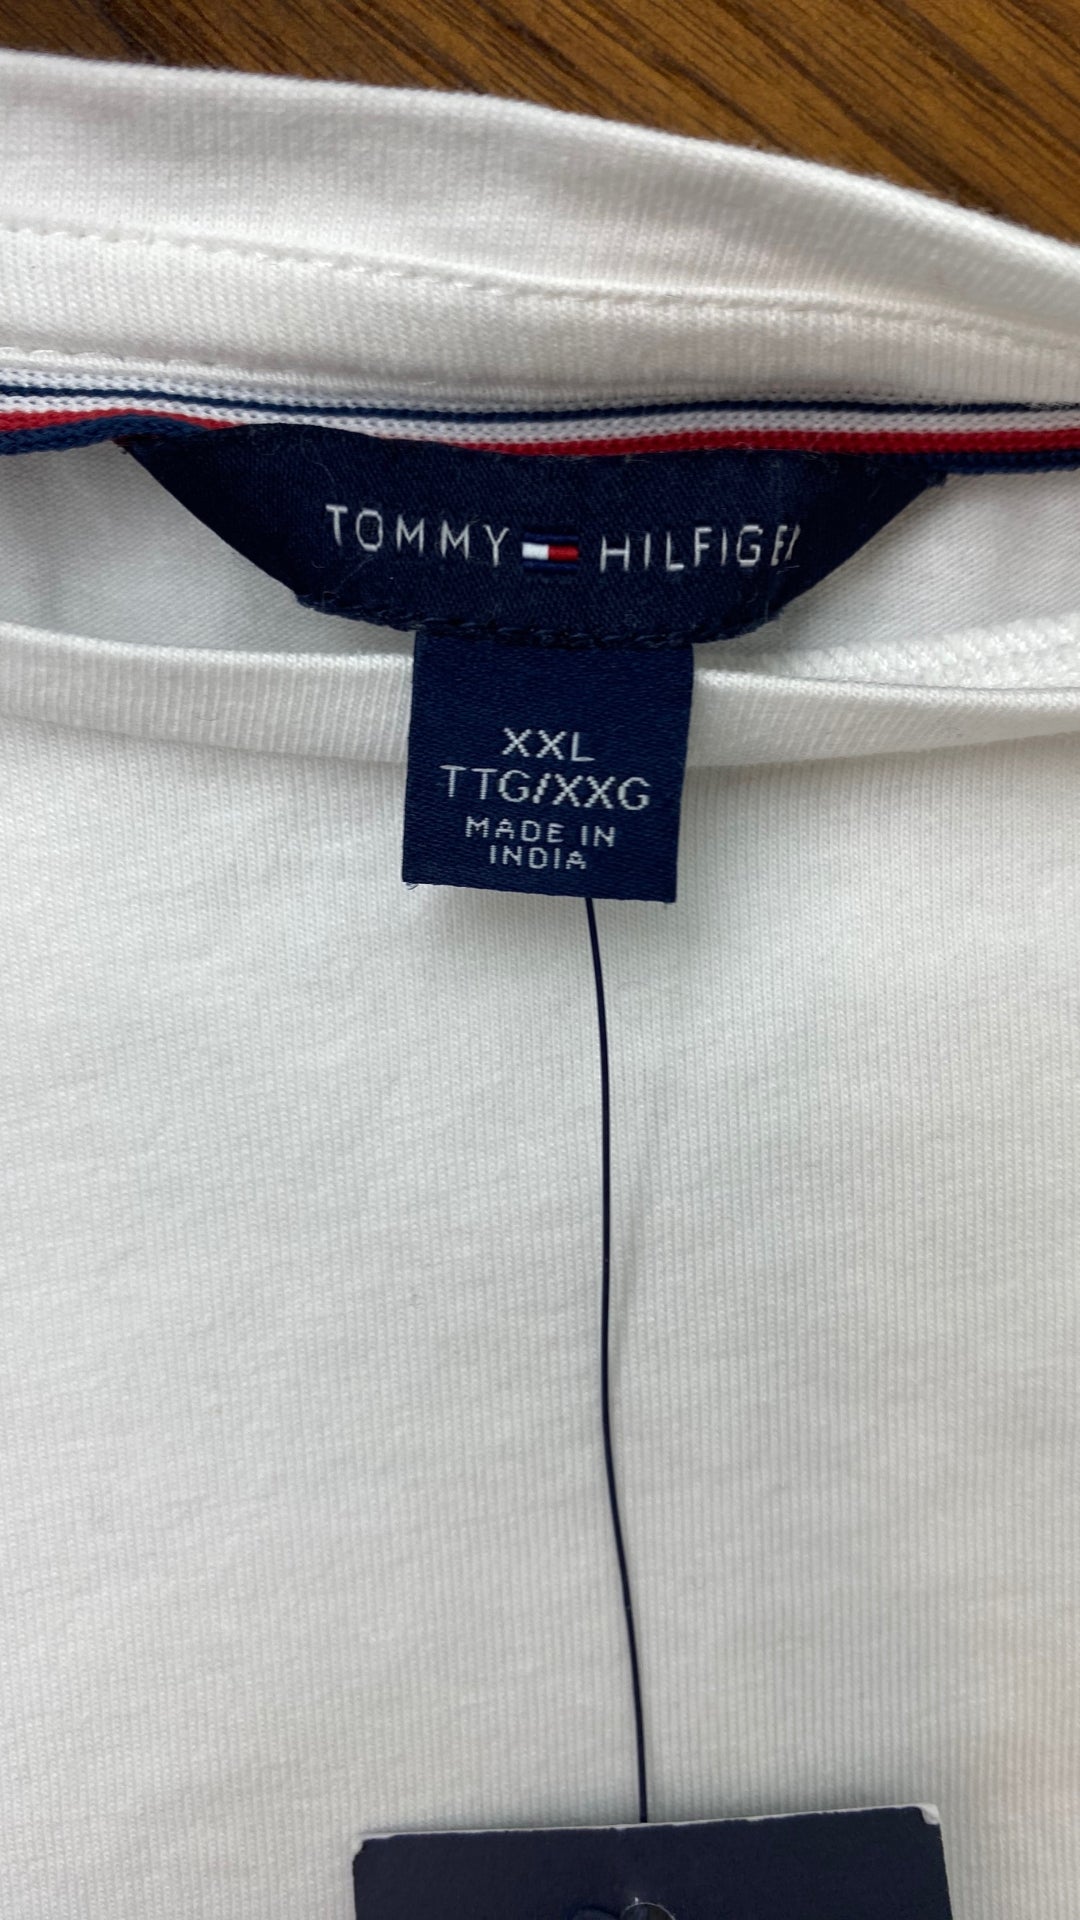 Chandail blanc ourlet à rayures Tommy Hilfiger, taille xxl. Vue de l'étiquette de marque et taille.